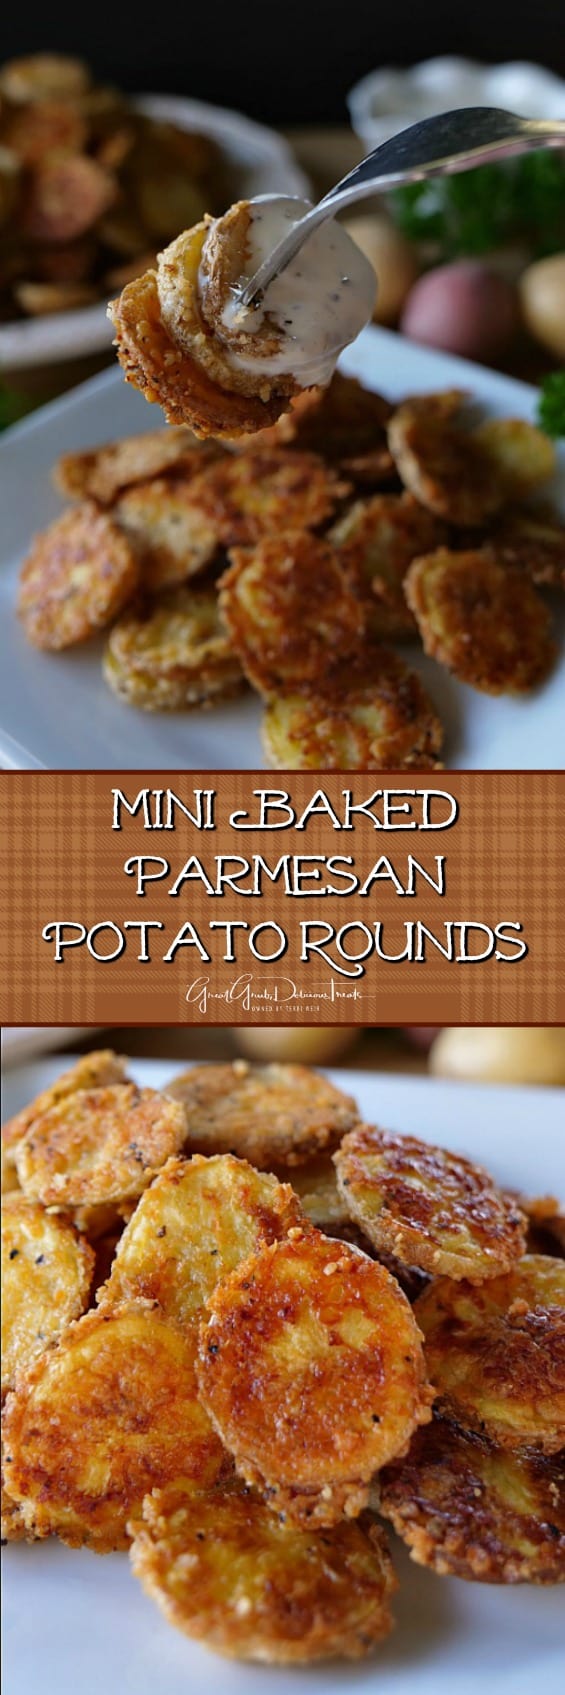 Mini Baked Parmesan Potato Rounds